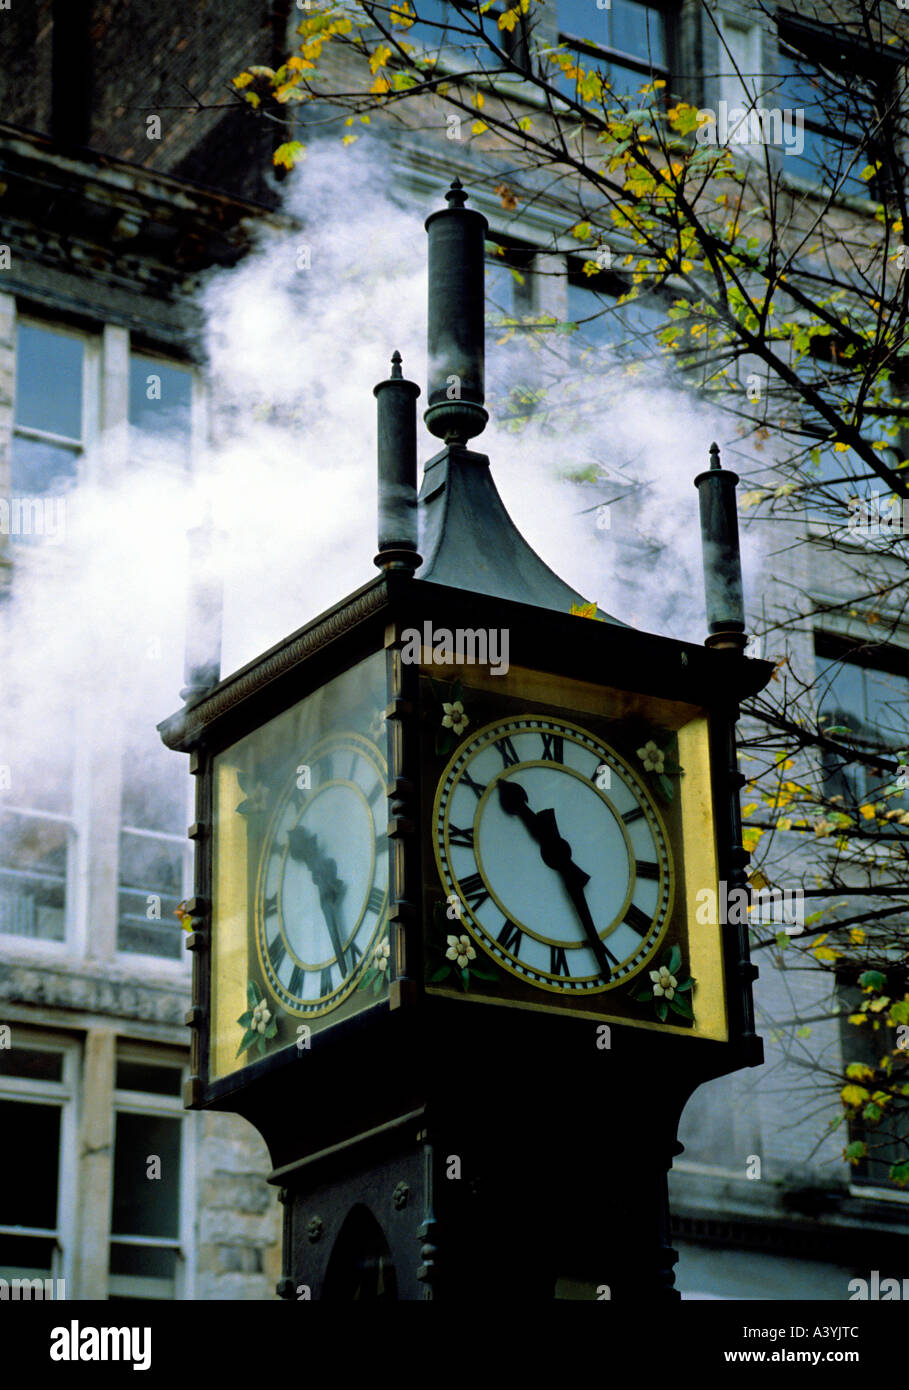 Dampf-Uhr Stadt Vancouver alte Stadt Gastown Provinz British Columbia Kanada nur zur redaktionellen Verwendung Stockfoto